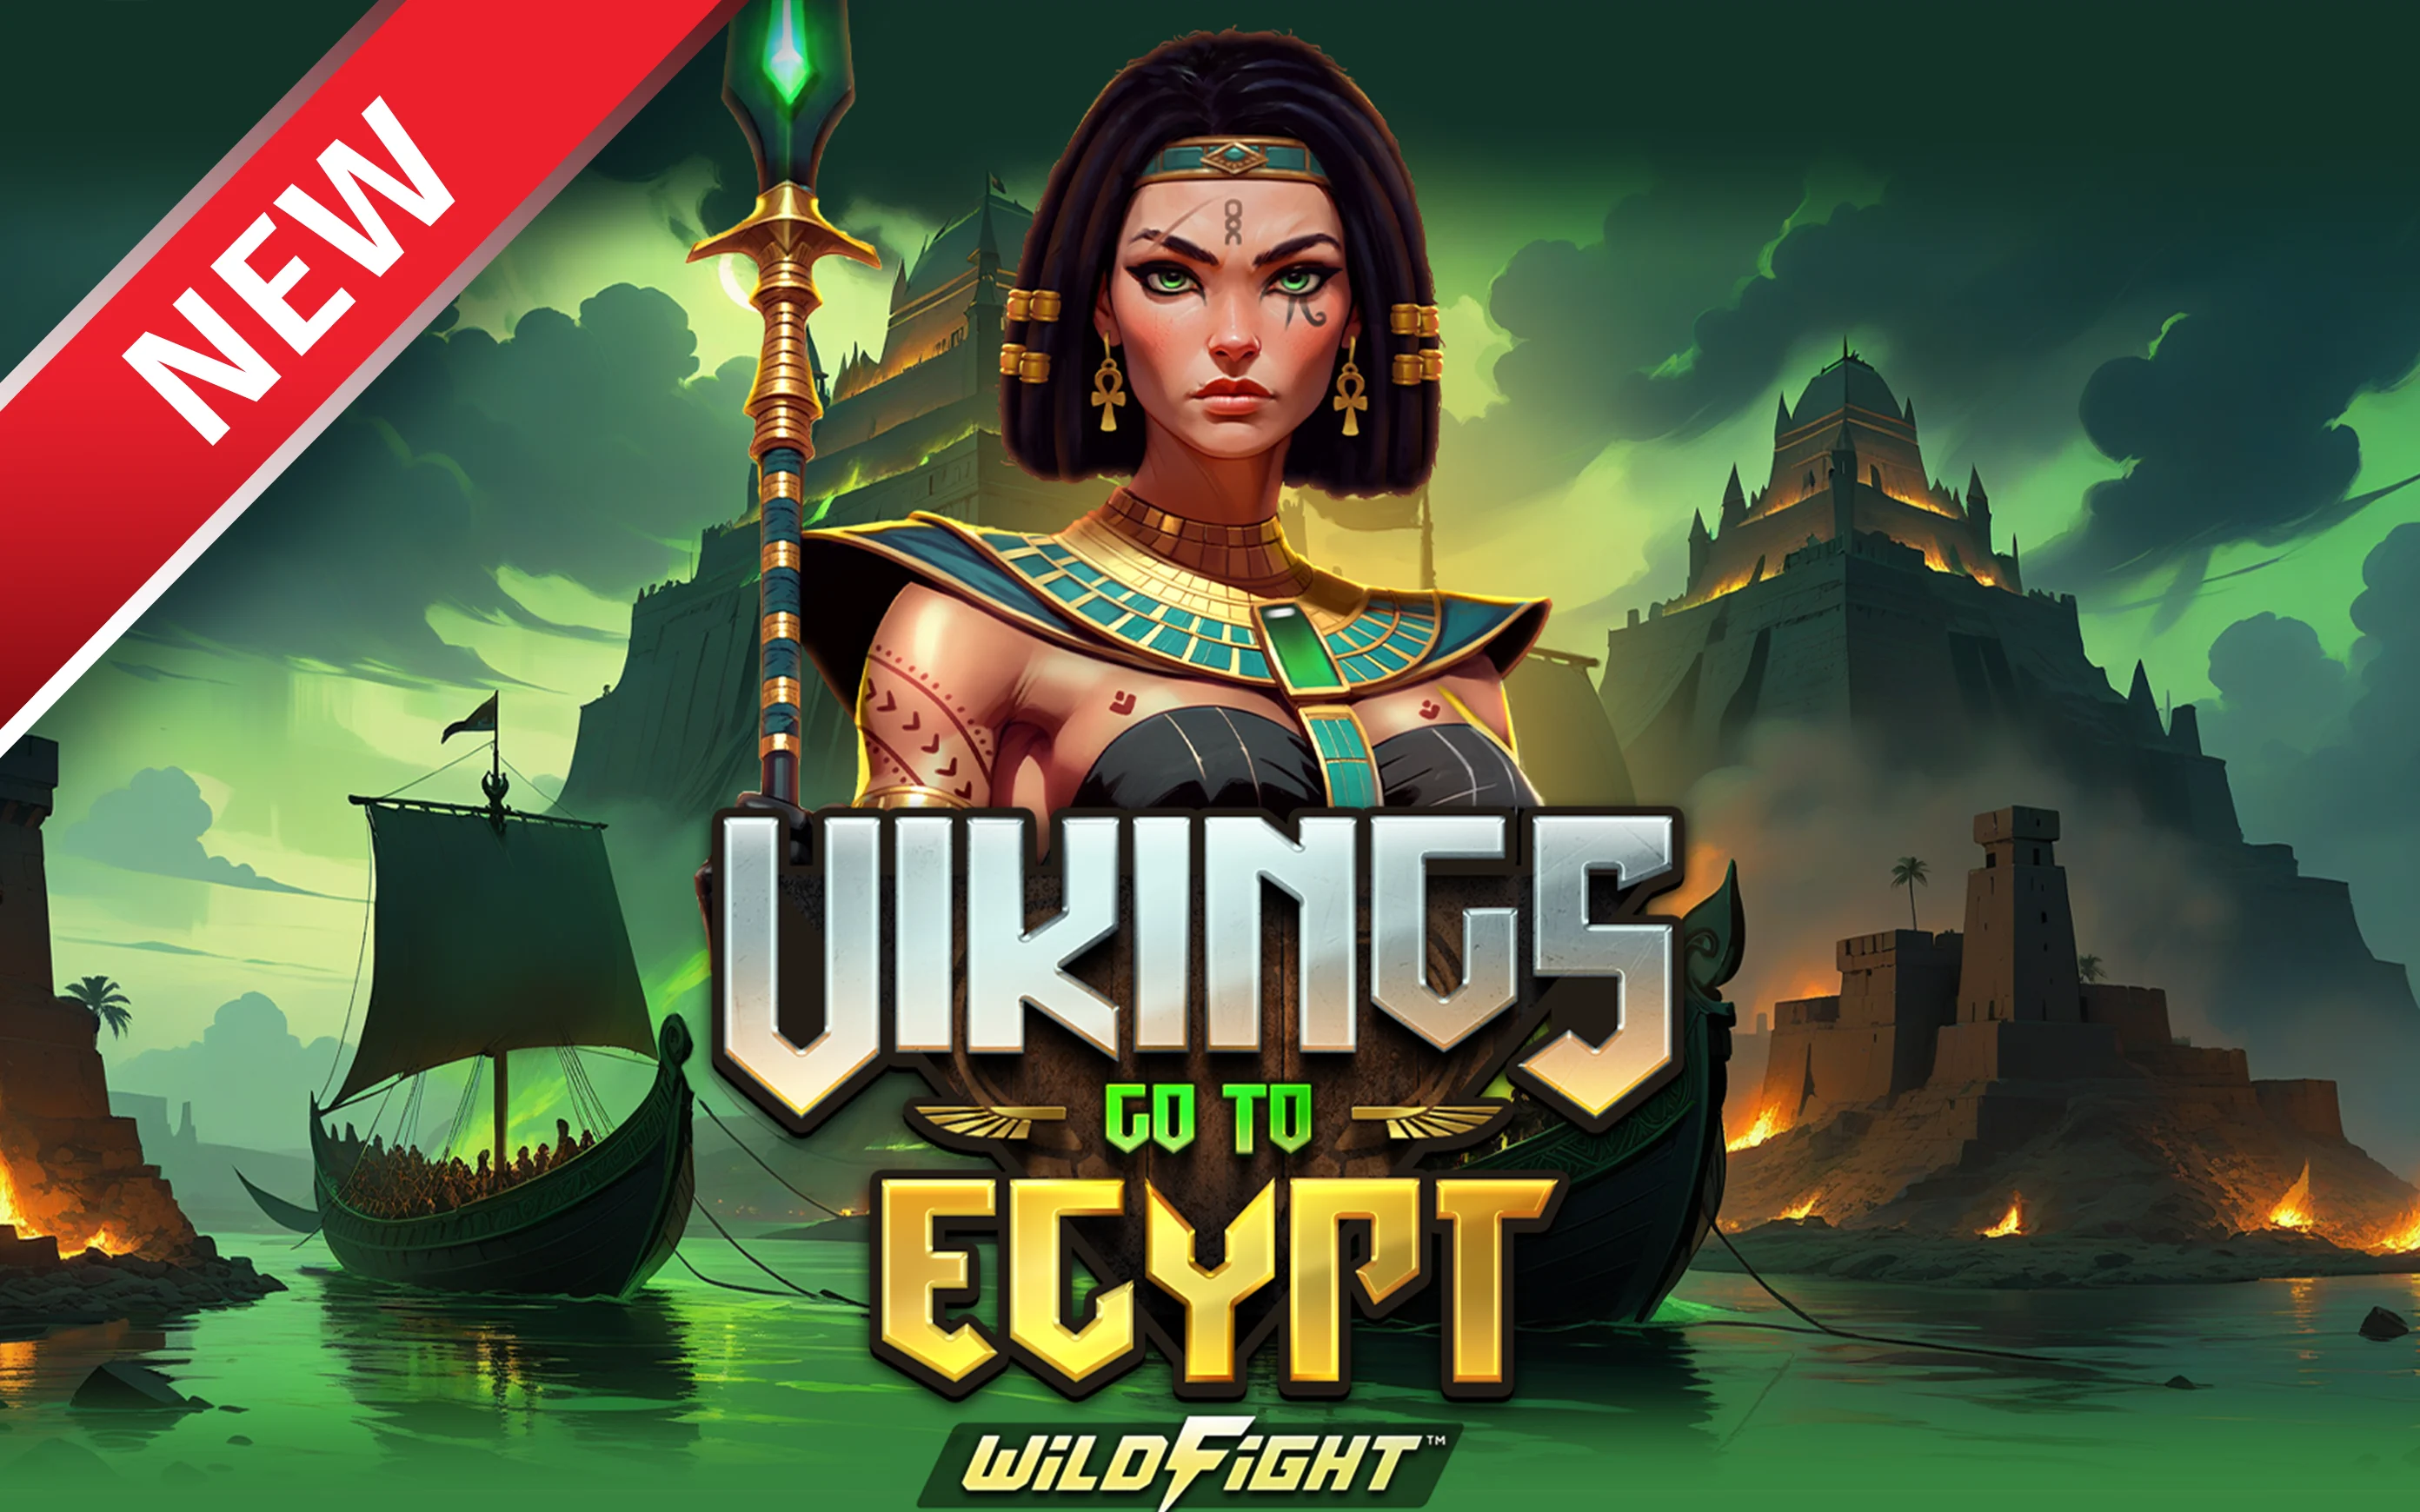 Spil Vikings Go To Egypt Wild Fight!™ på Starcasino.be online kasino
